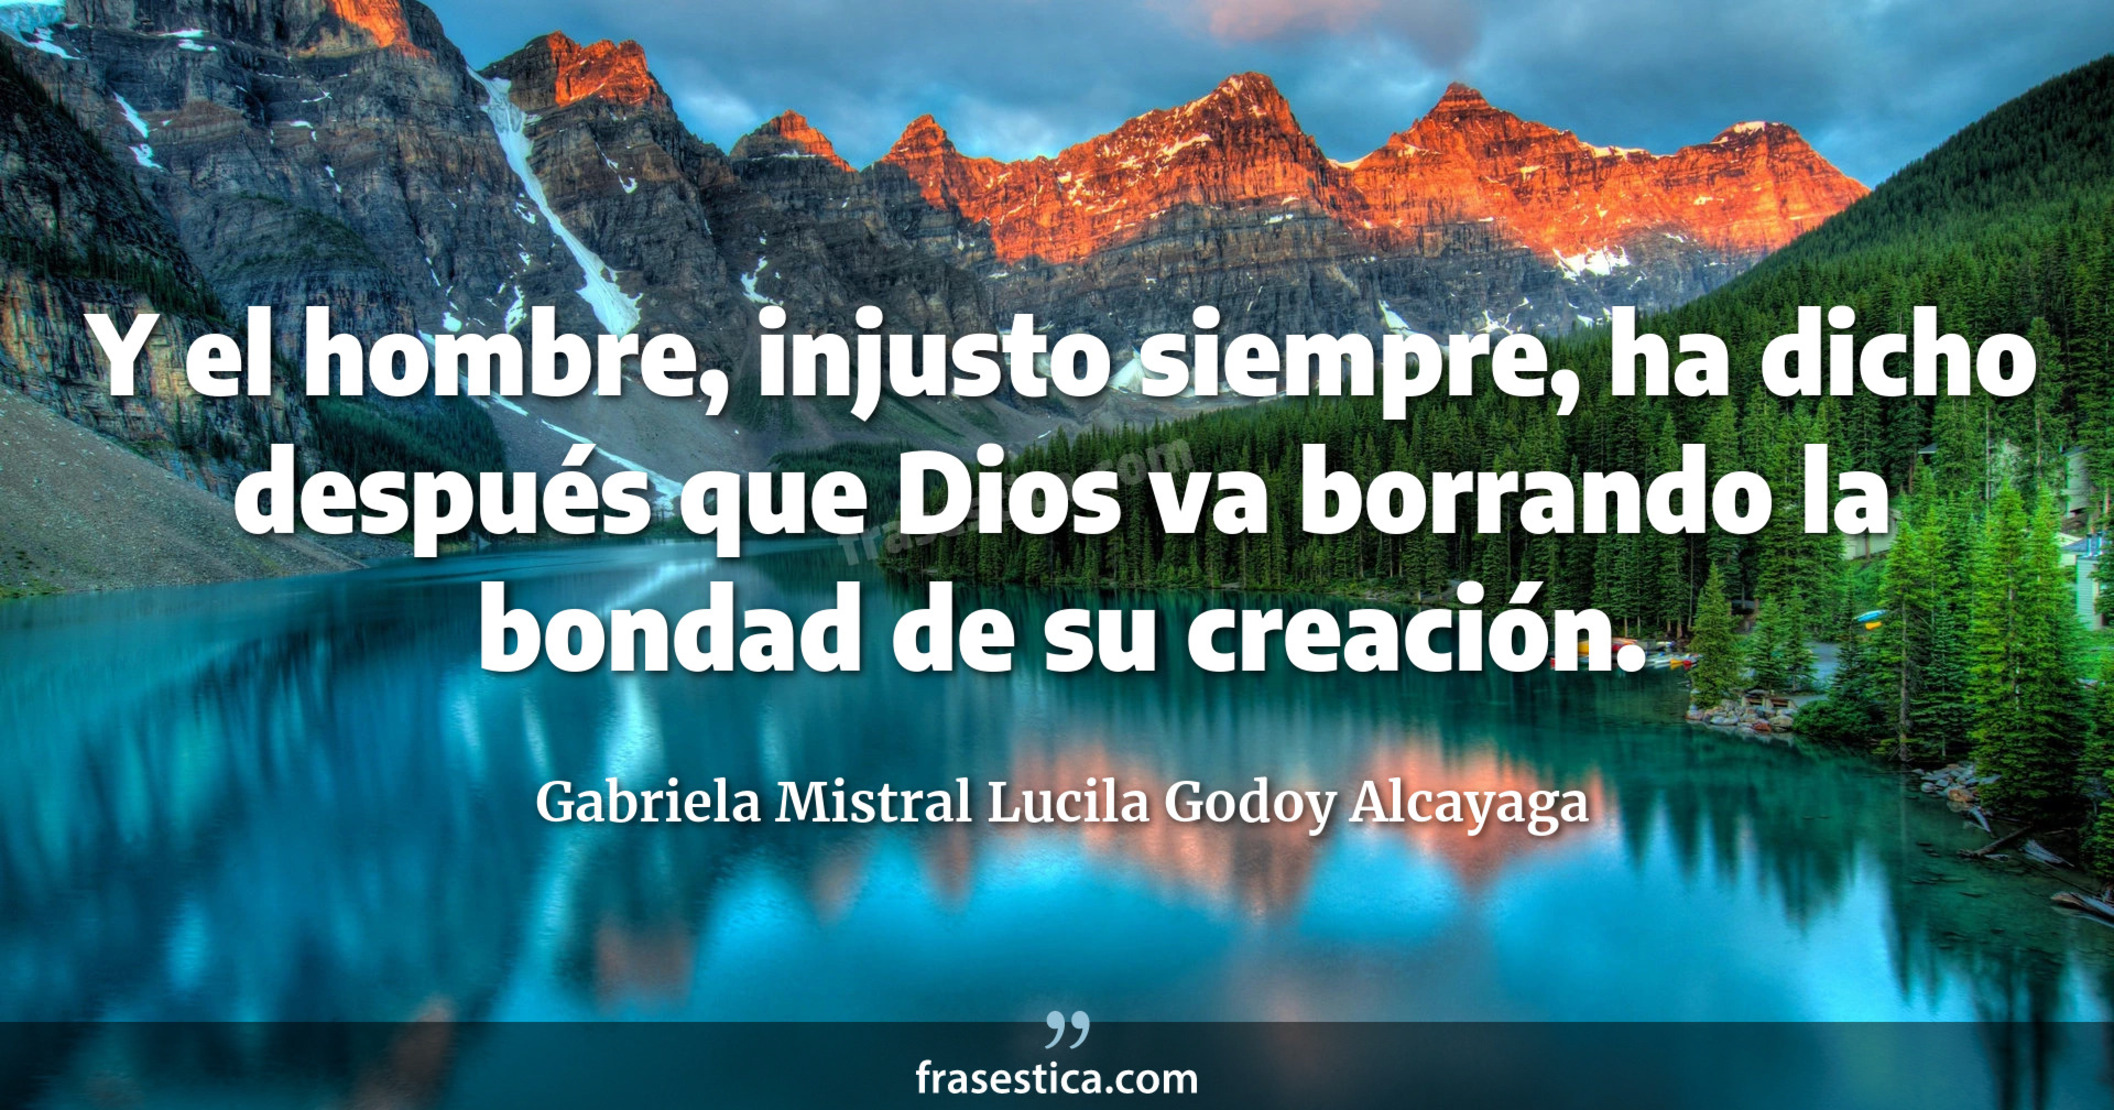 Y el hombre, injusto siempre, ha dicho después que Dios va borrando la bondad de su creación. - Gabriela Mistral Lucila Godoy Alcayaga